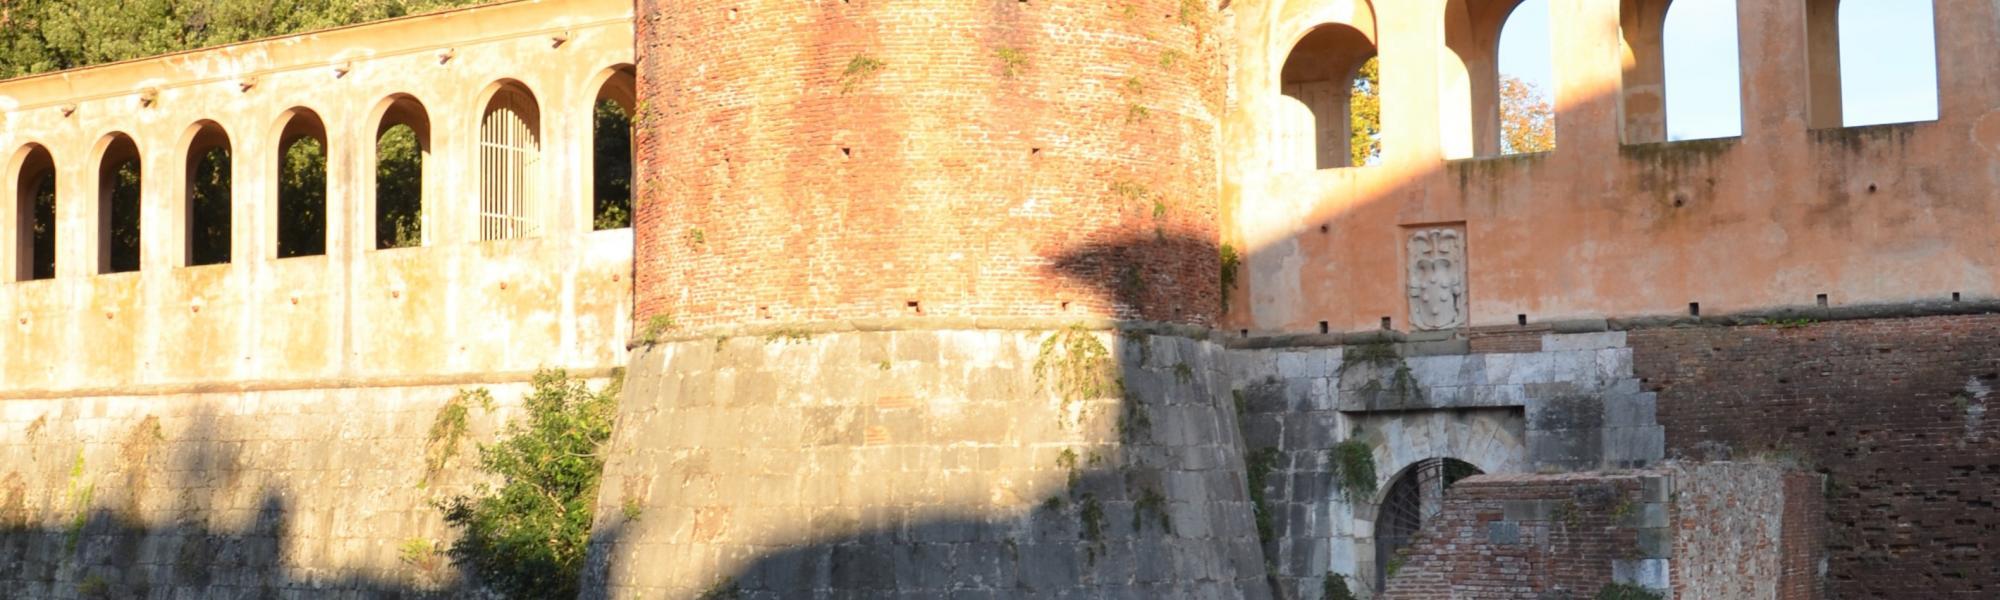 Bastione San Gallo e ponte seicentesco, cittadella nuova (L. Corevi, Comune di Pisa)